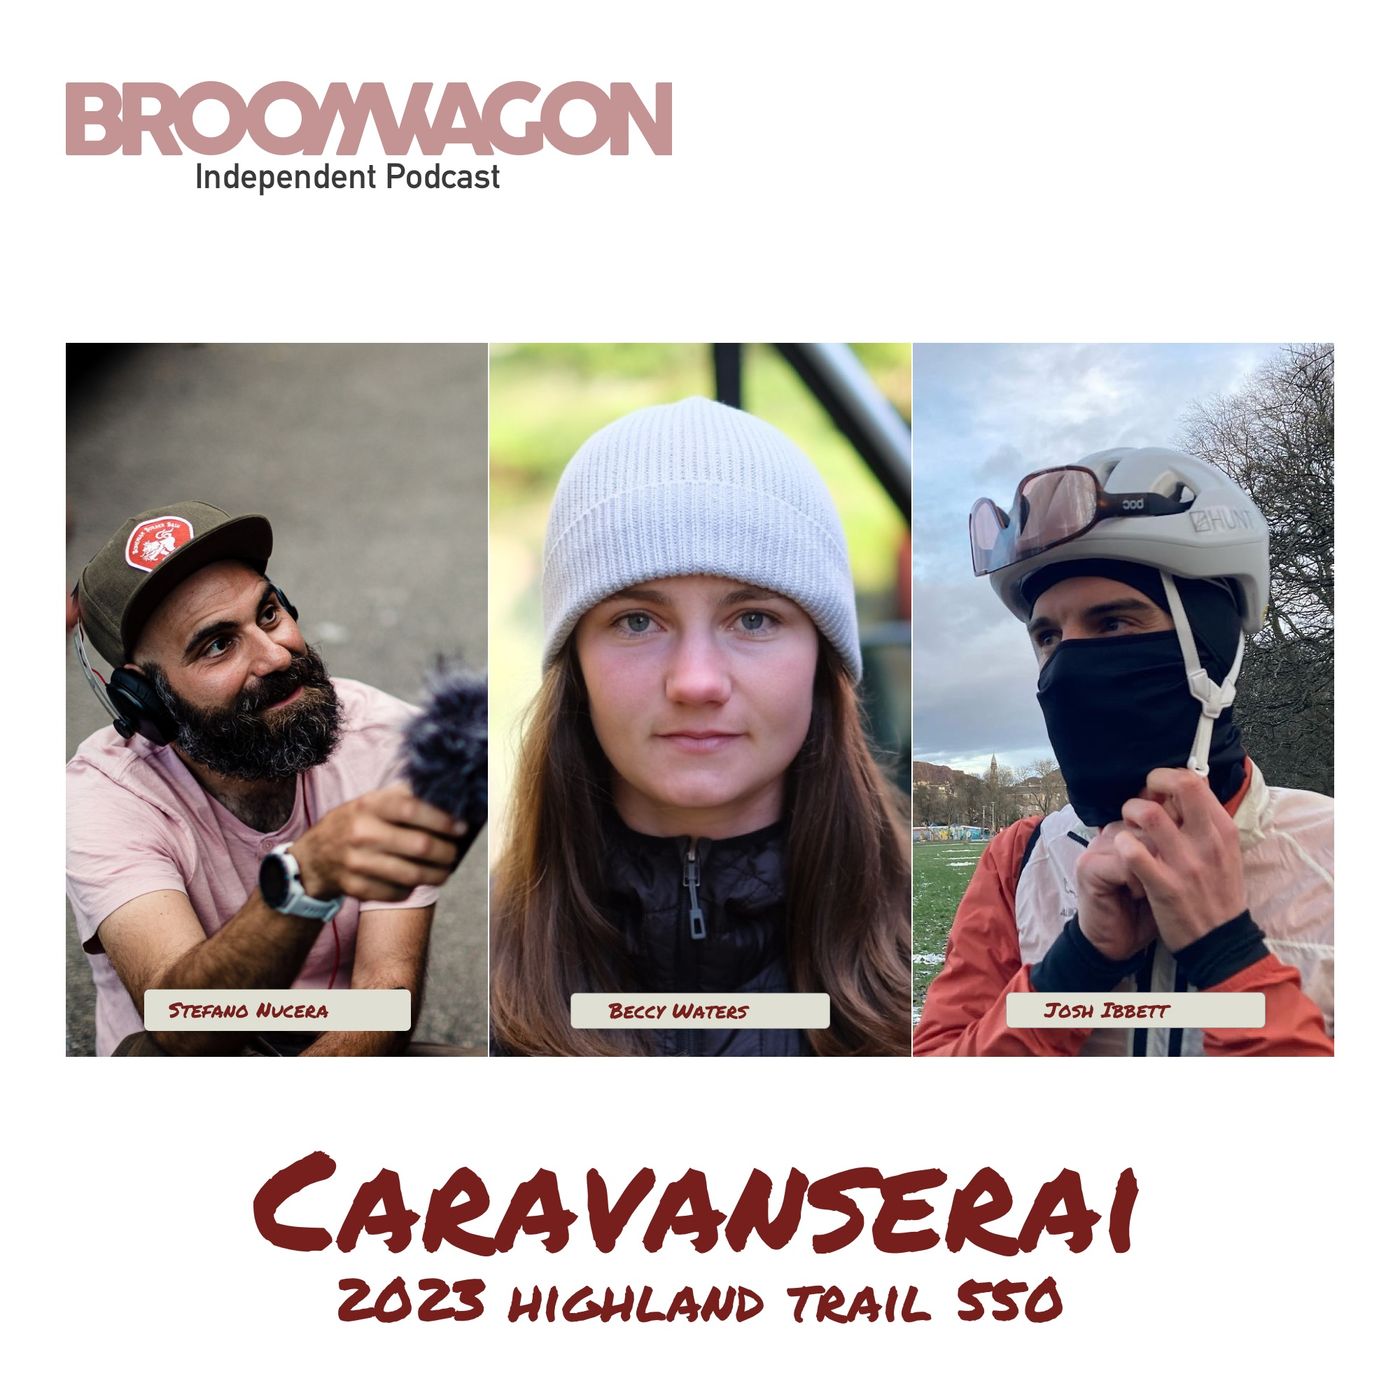 2023 Highland Trail 550 #Caravanserai